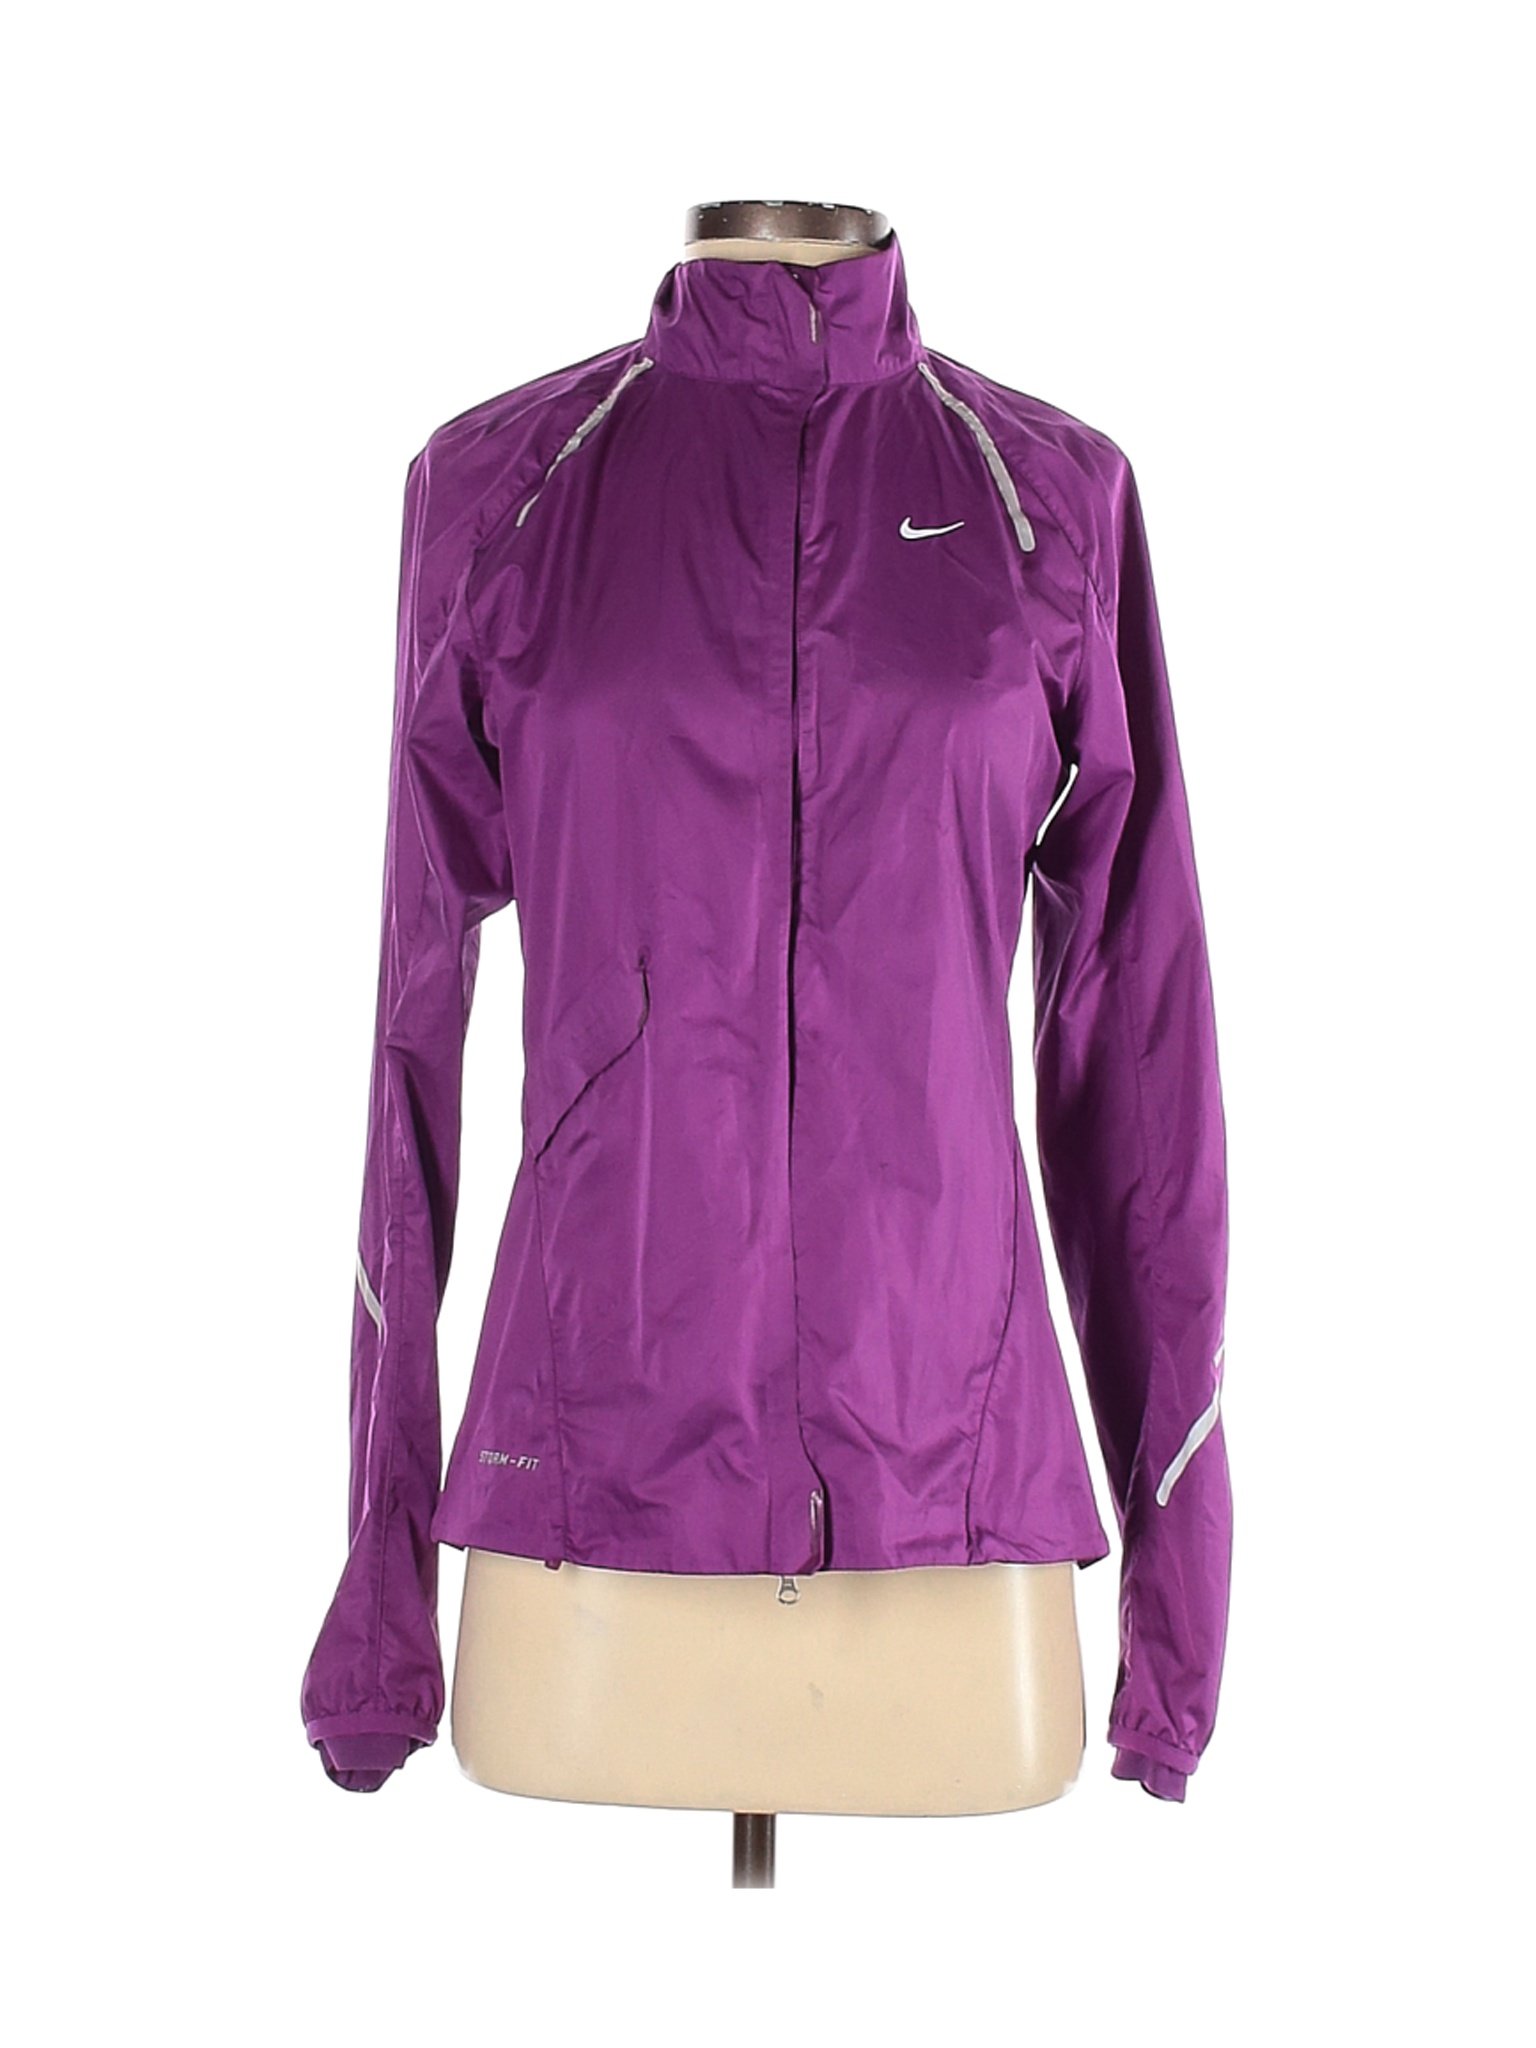 Nike Women Purple Windbreaker S | eBay